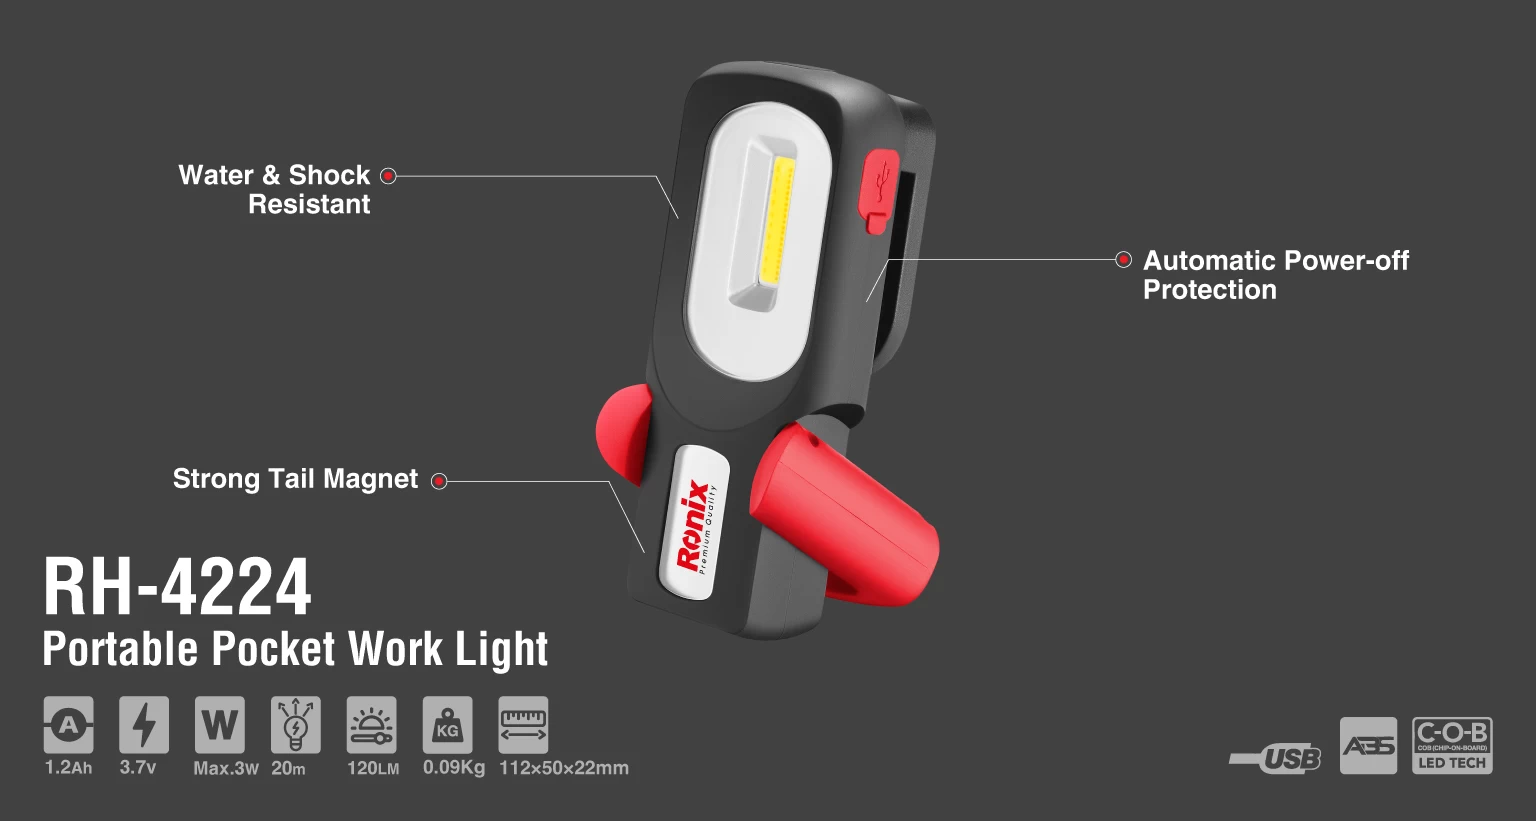 Portable Pocket Work Light_details